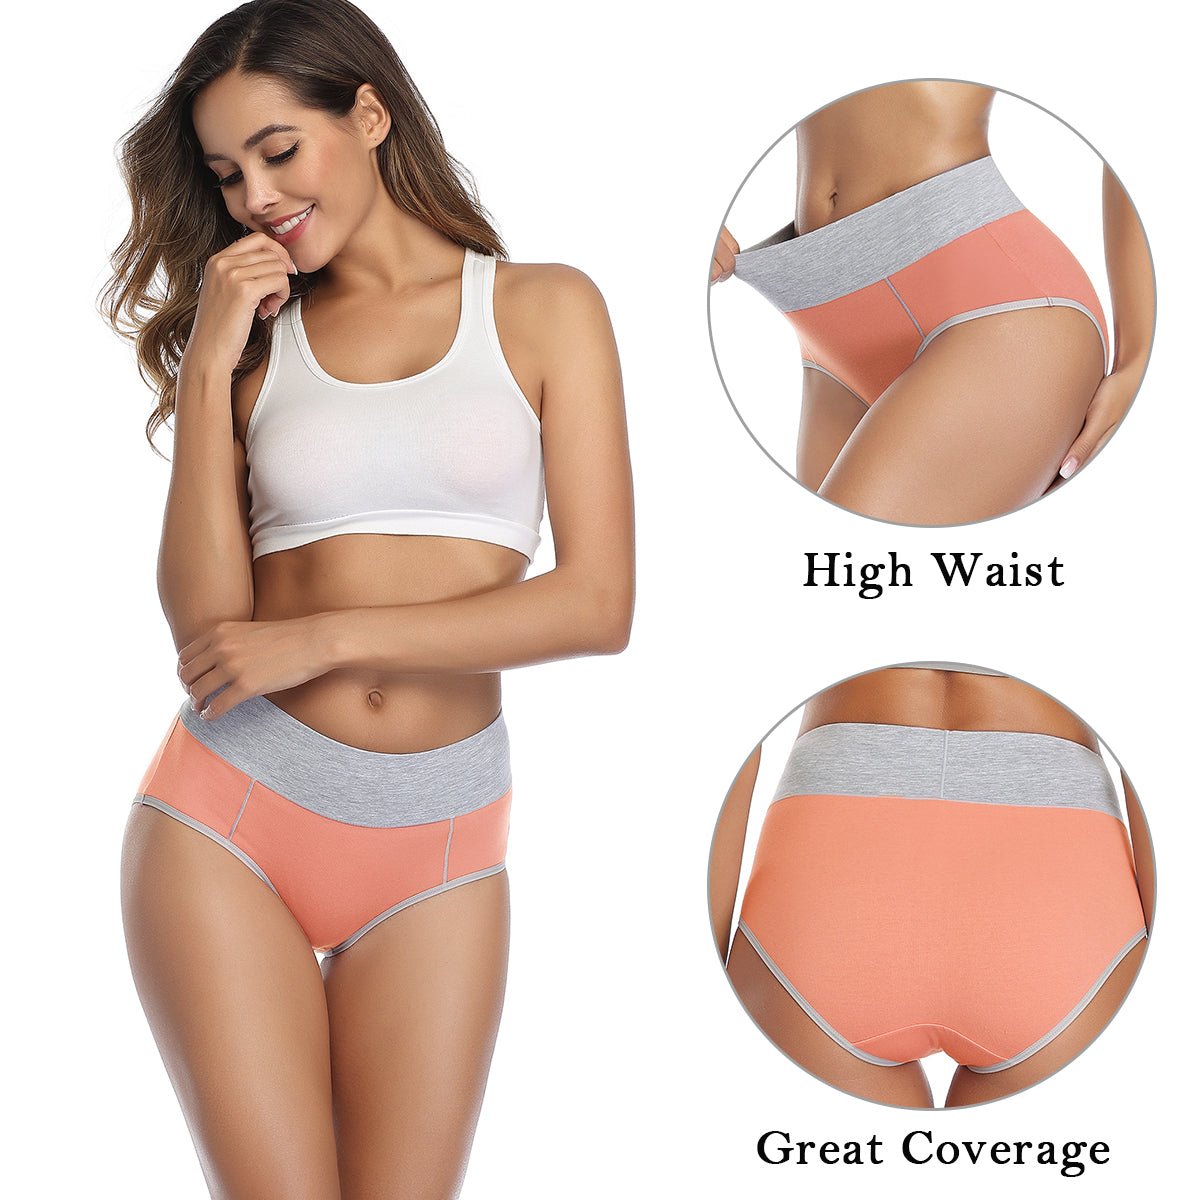 wirarpa Women's Underwear Cotton … curated on LTK